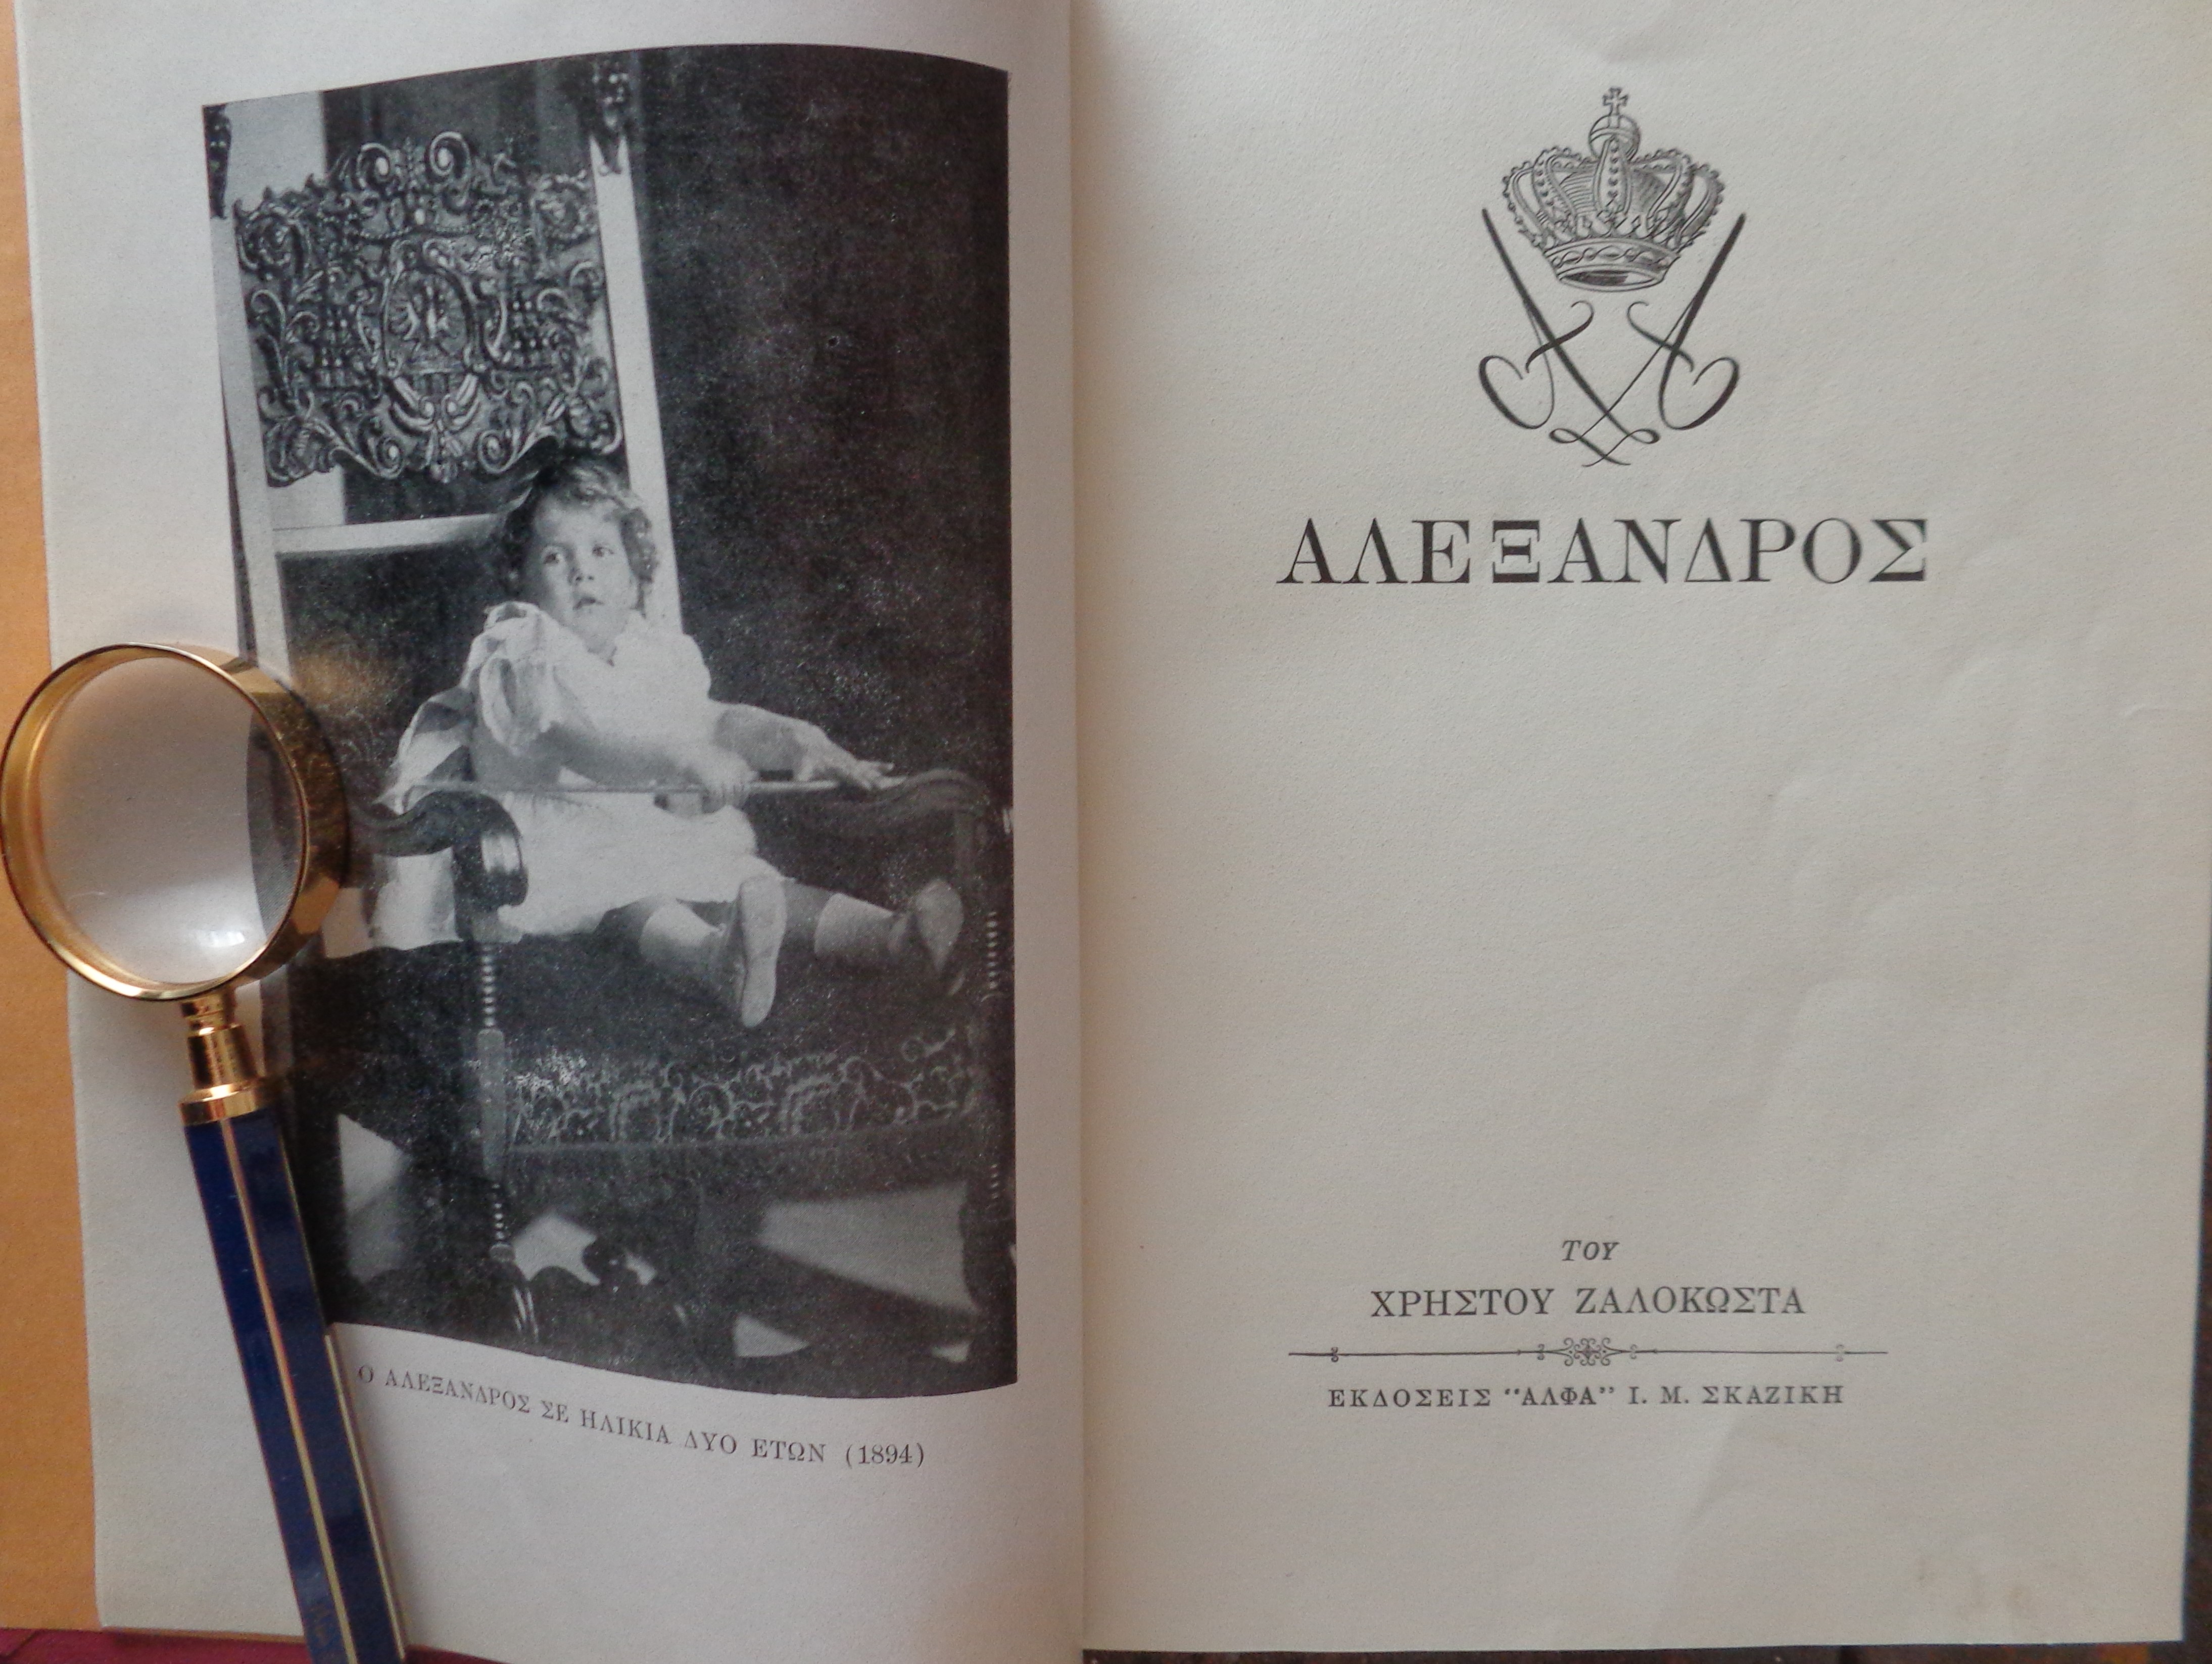 ΧΡΗΣΤΟΣ ΖΑΛΟΚΩΣΤΑΣ  Αλέξανδρος  ΠΡΩΤΗ ΕΚΔΟΣΗ ''Άλφα'' Ι.Μ Σκαζίκη, 1952